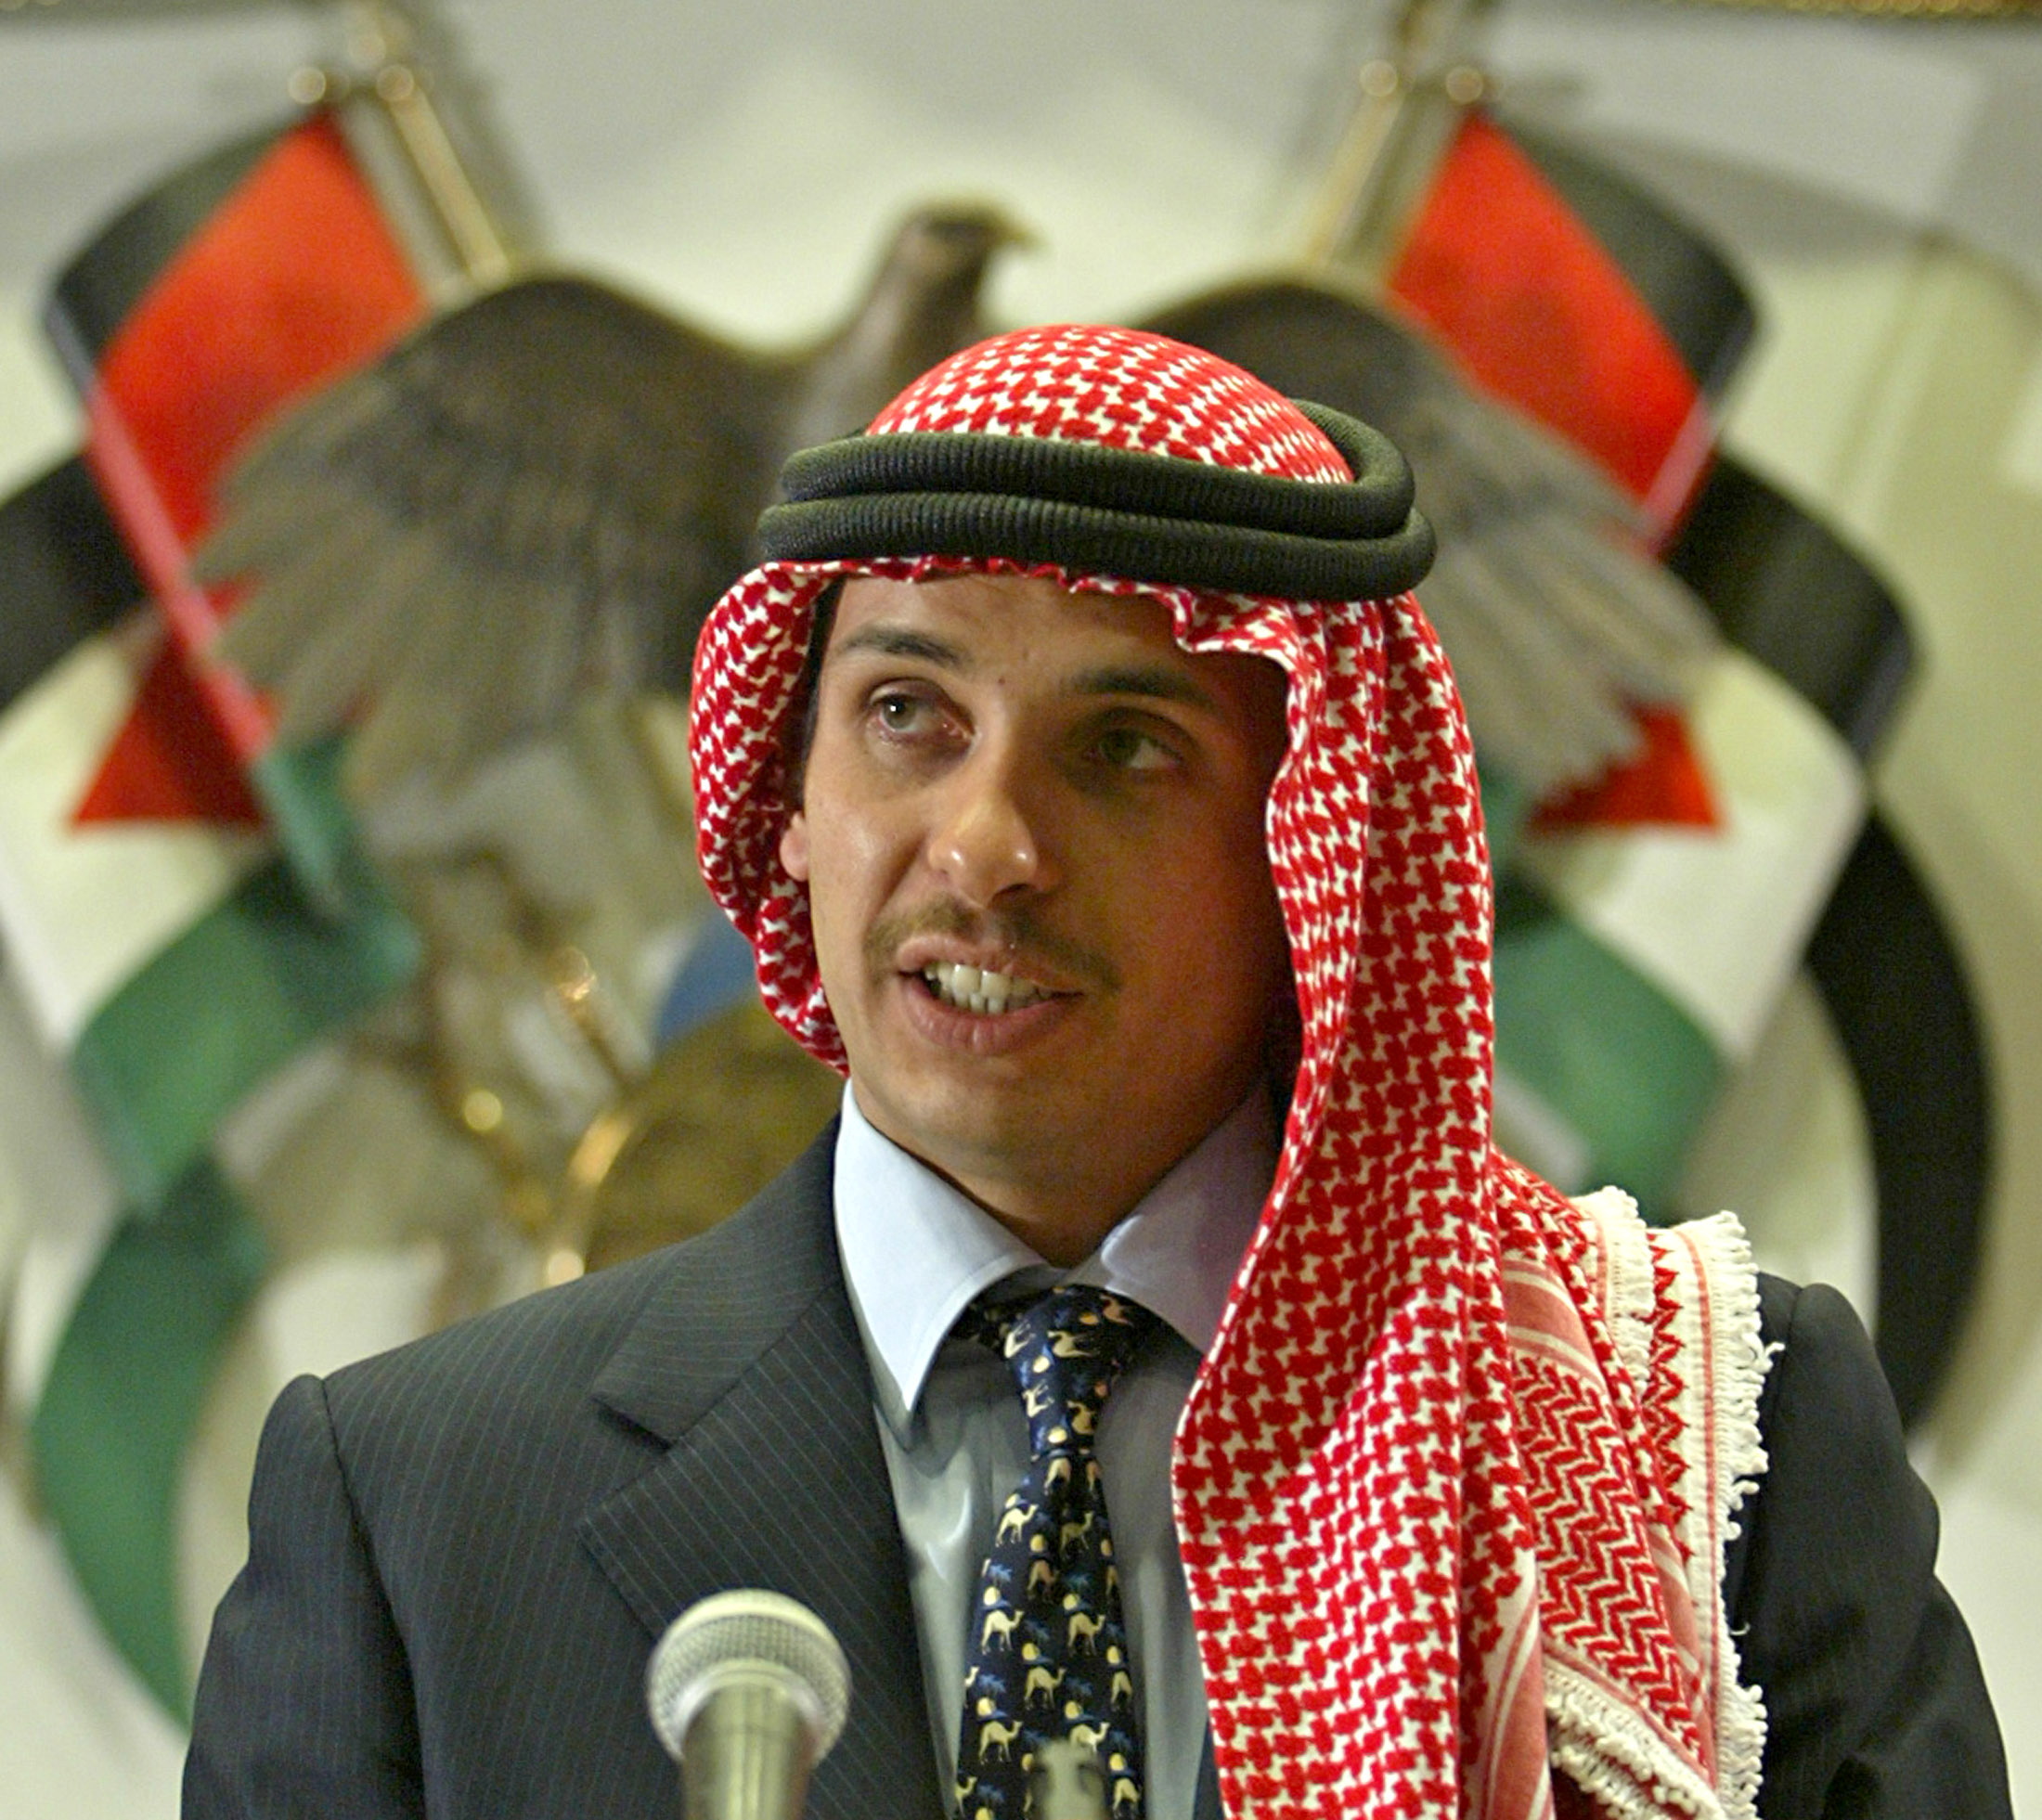 Jordan's Crown Prince Hamza bin Hussein delivers a speech in Amman